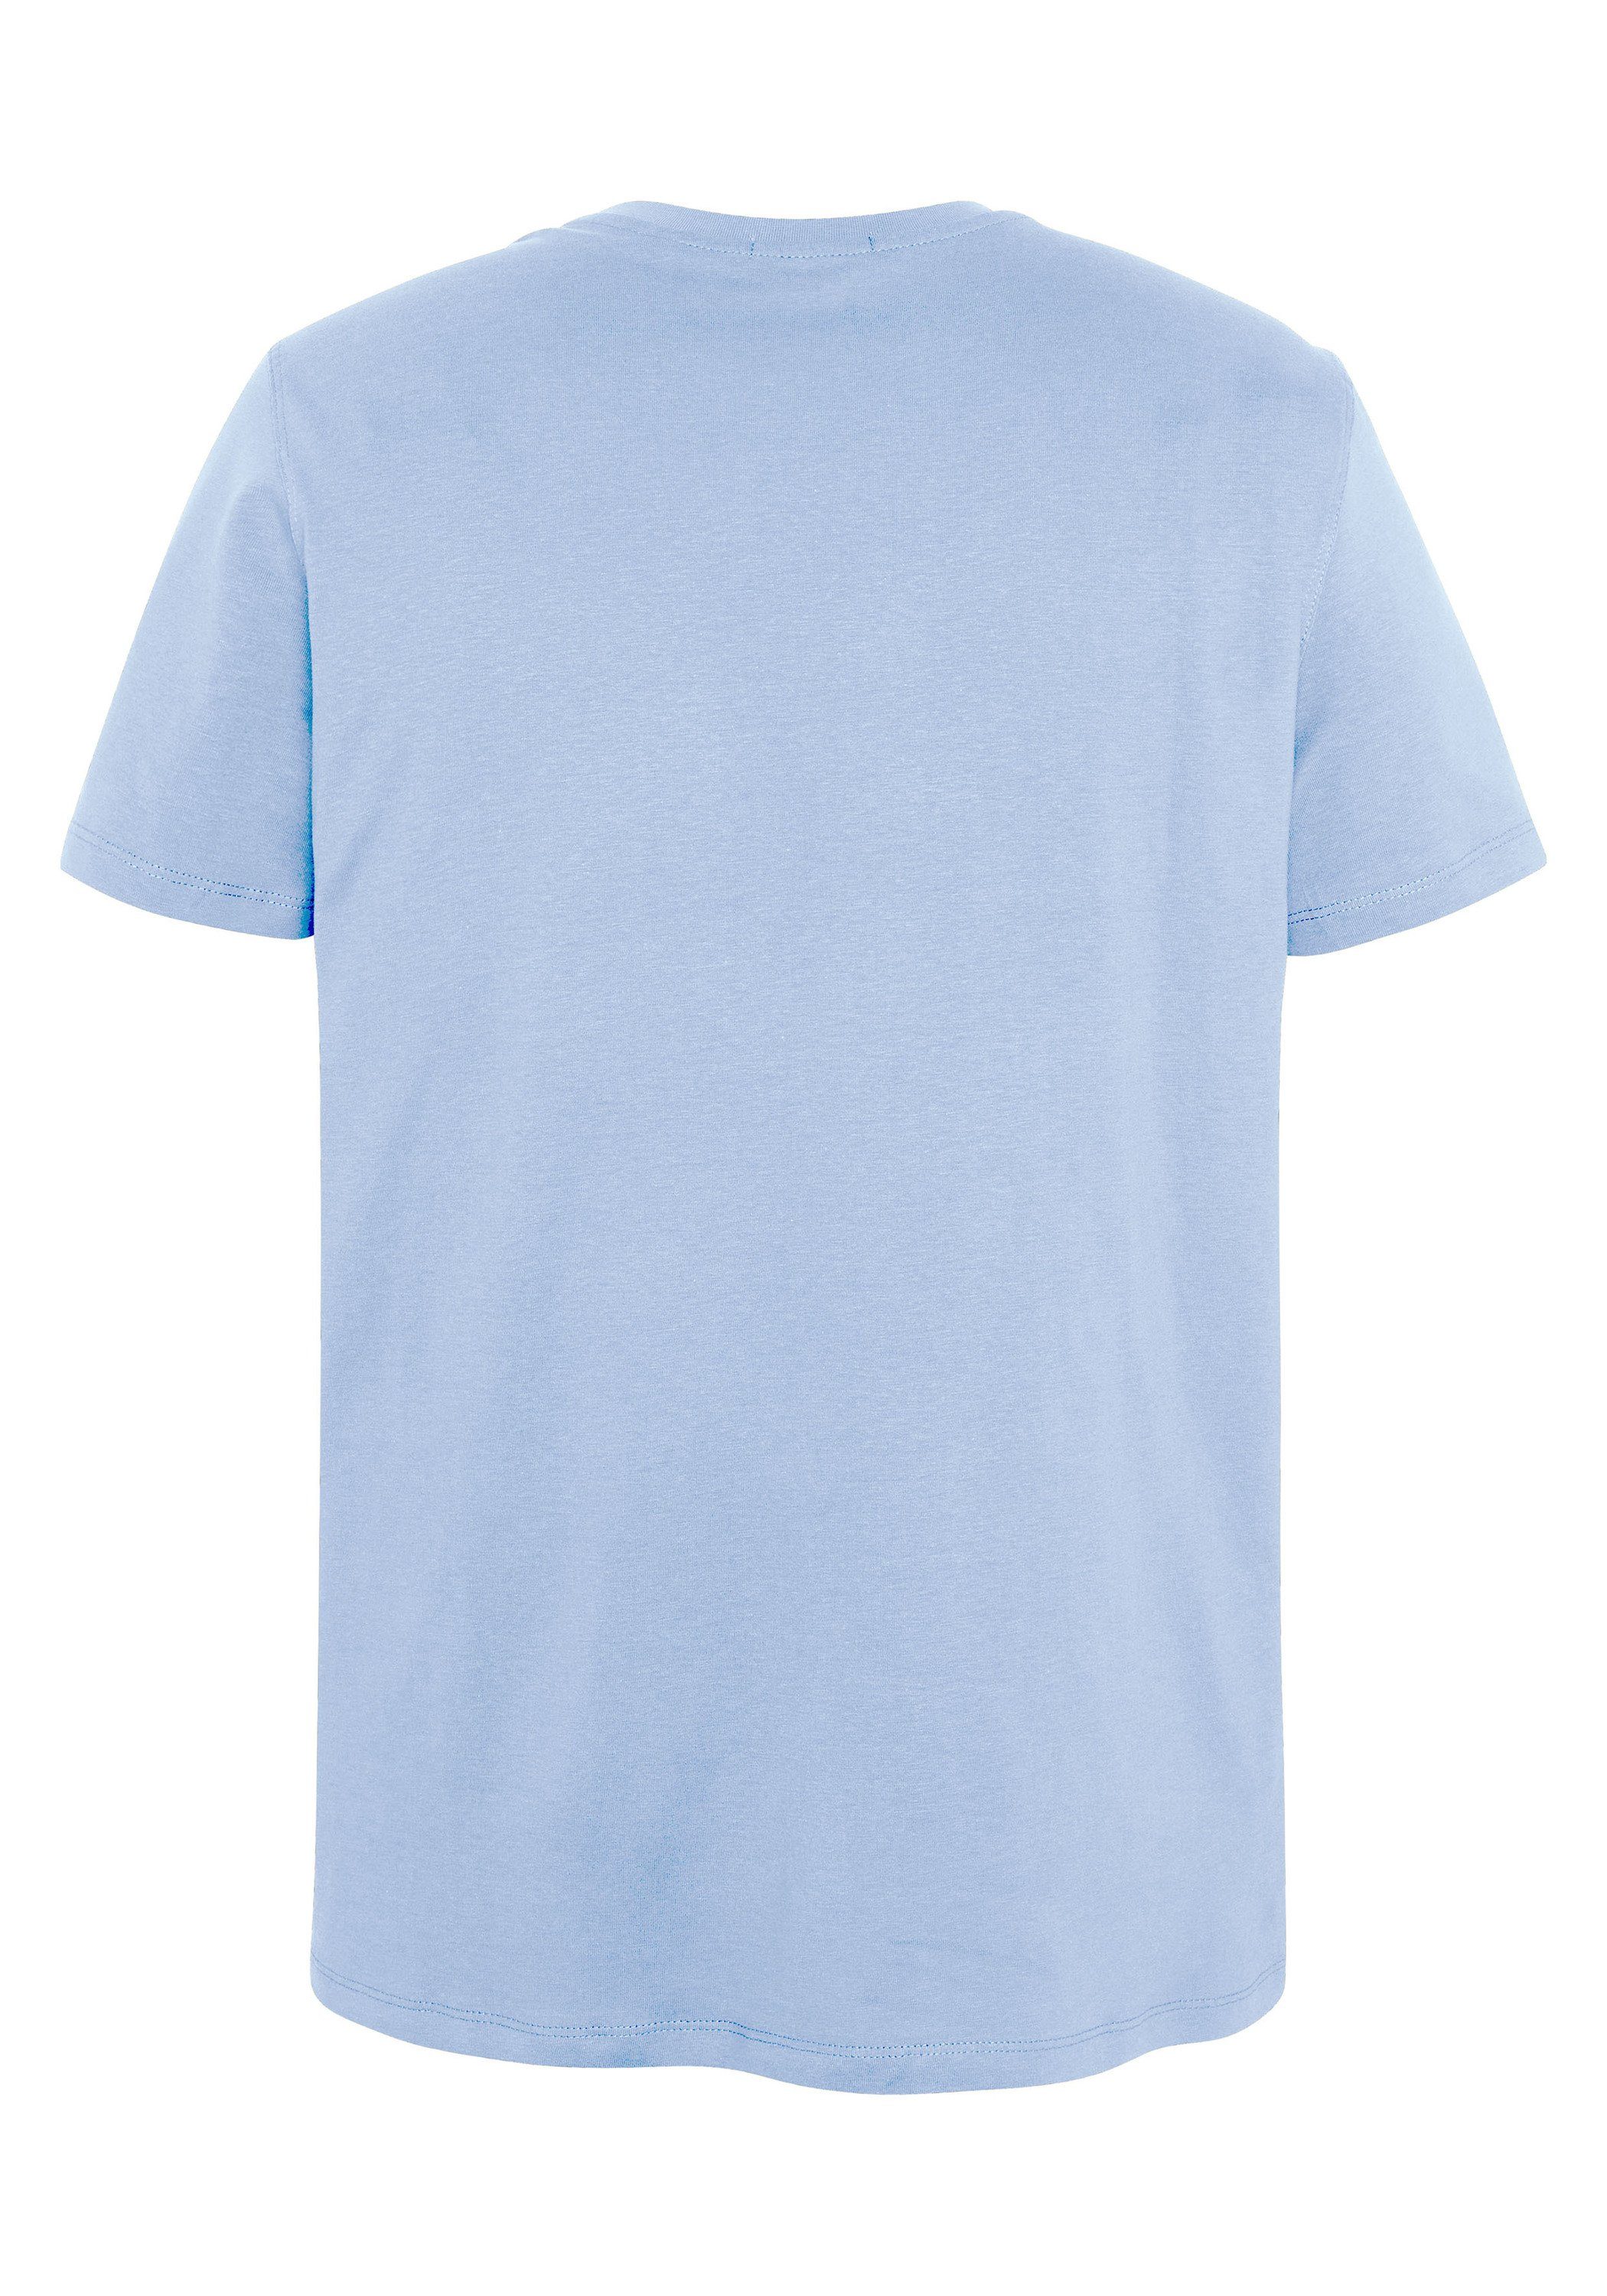 16-3922 Blue Brunnera T-Shirt mit 1 Label-Schriftzug Chiemsee Print-Shirt